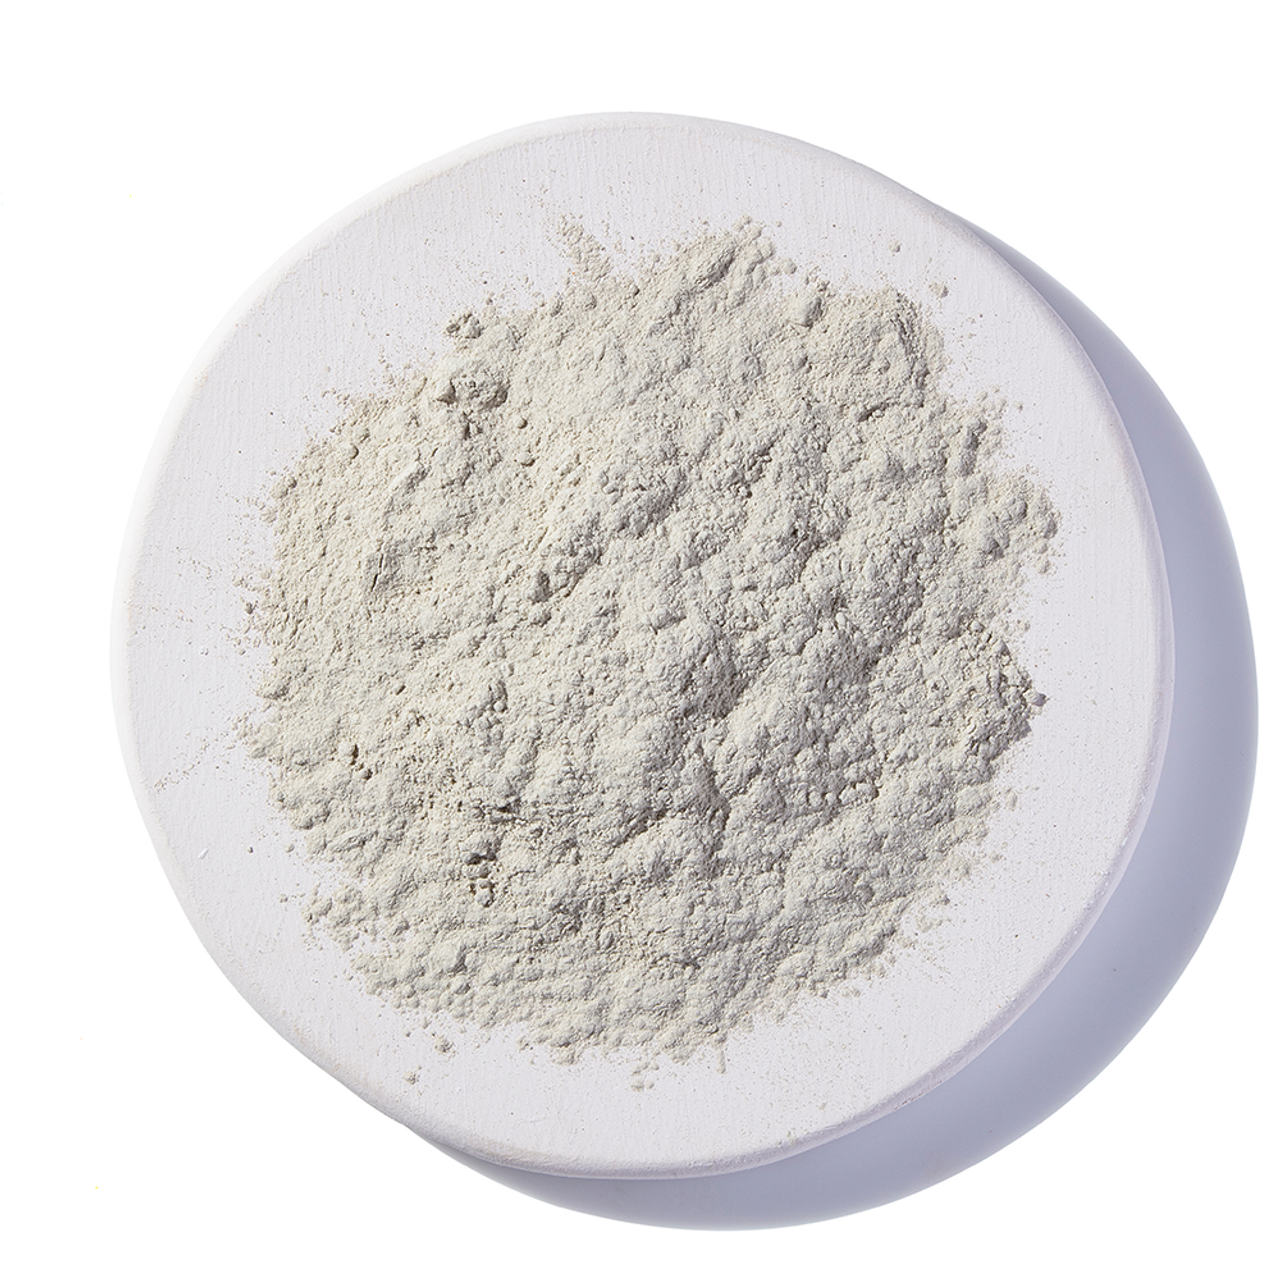 Food Grade Sodium Bentonite Clay 454g - Belle Chemical